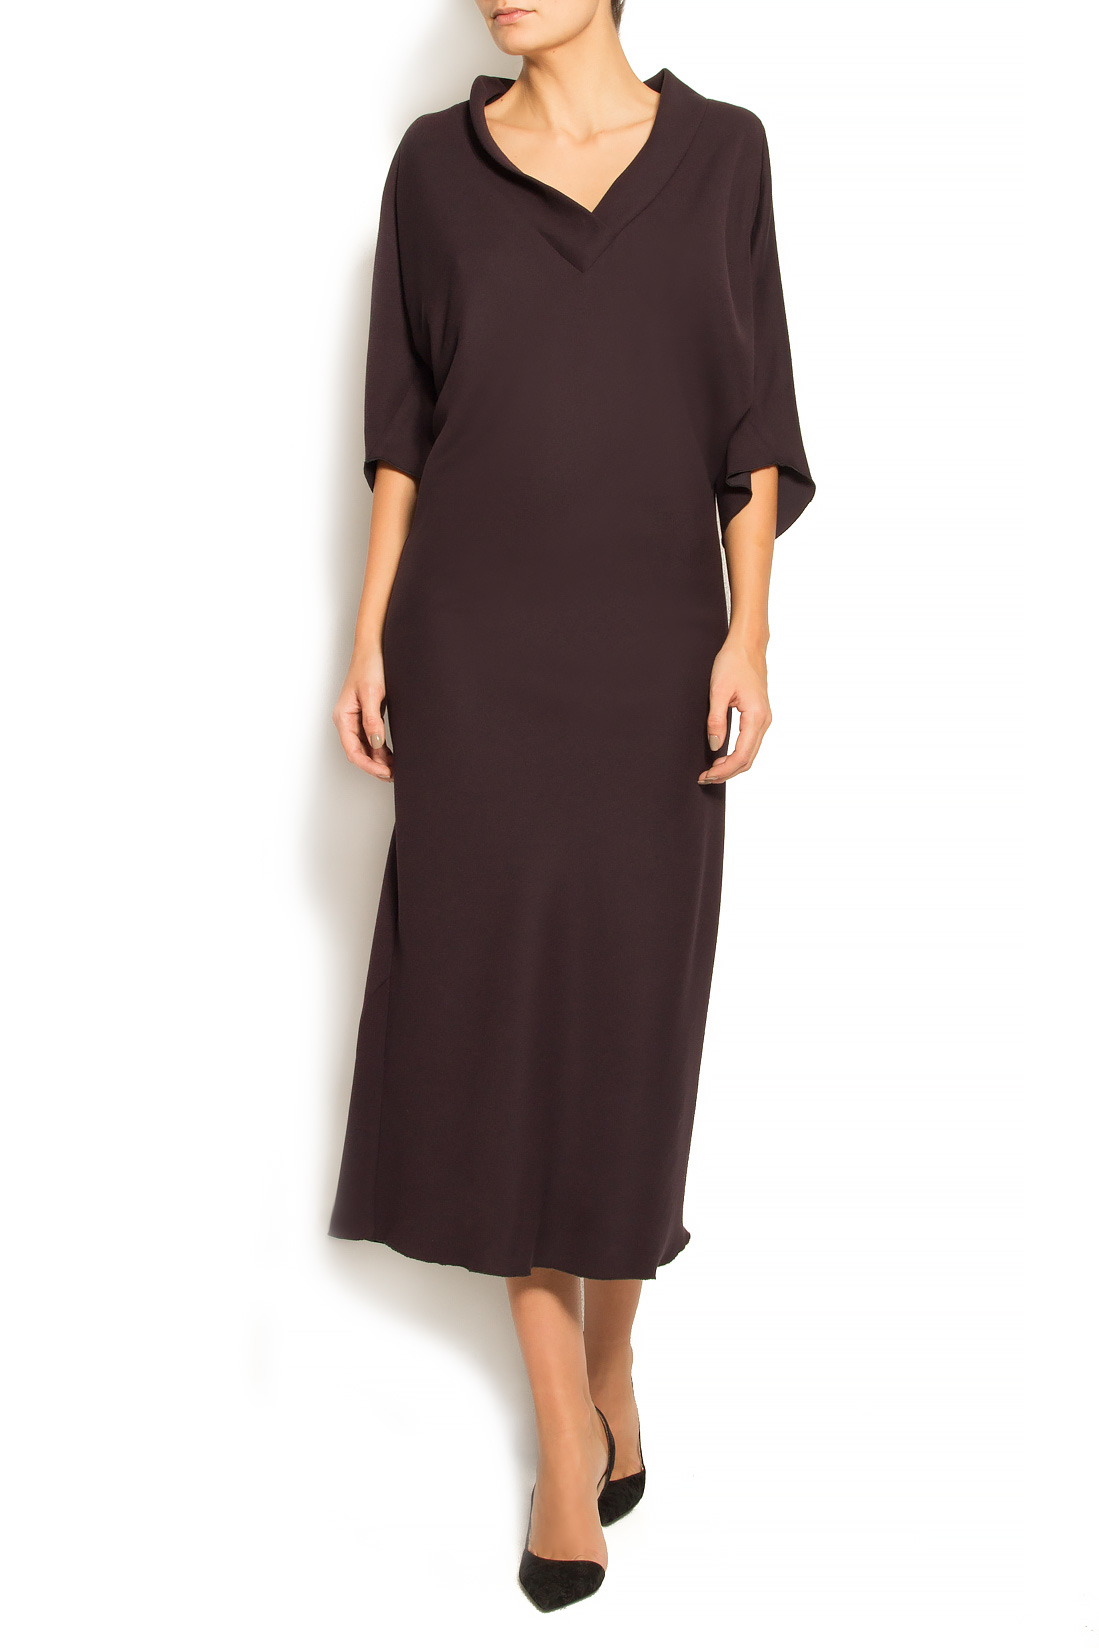 فستان من مزيج القطن و الصوف لينا كريفانو image 0